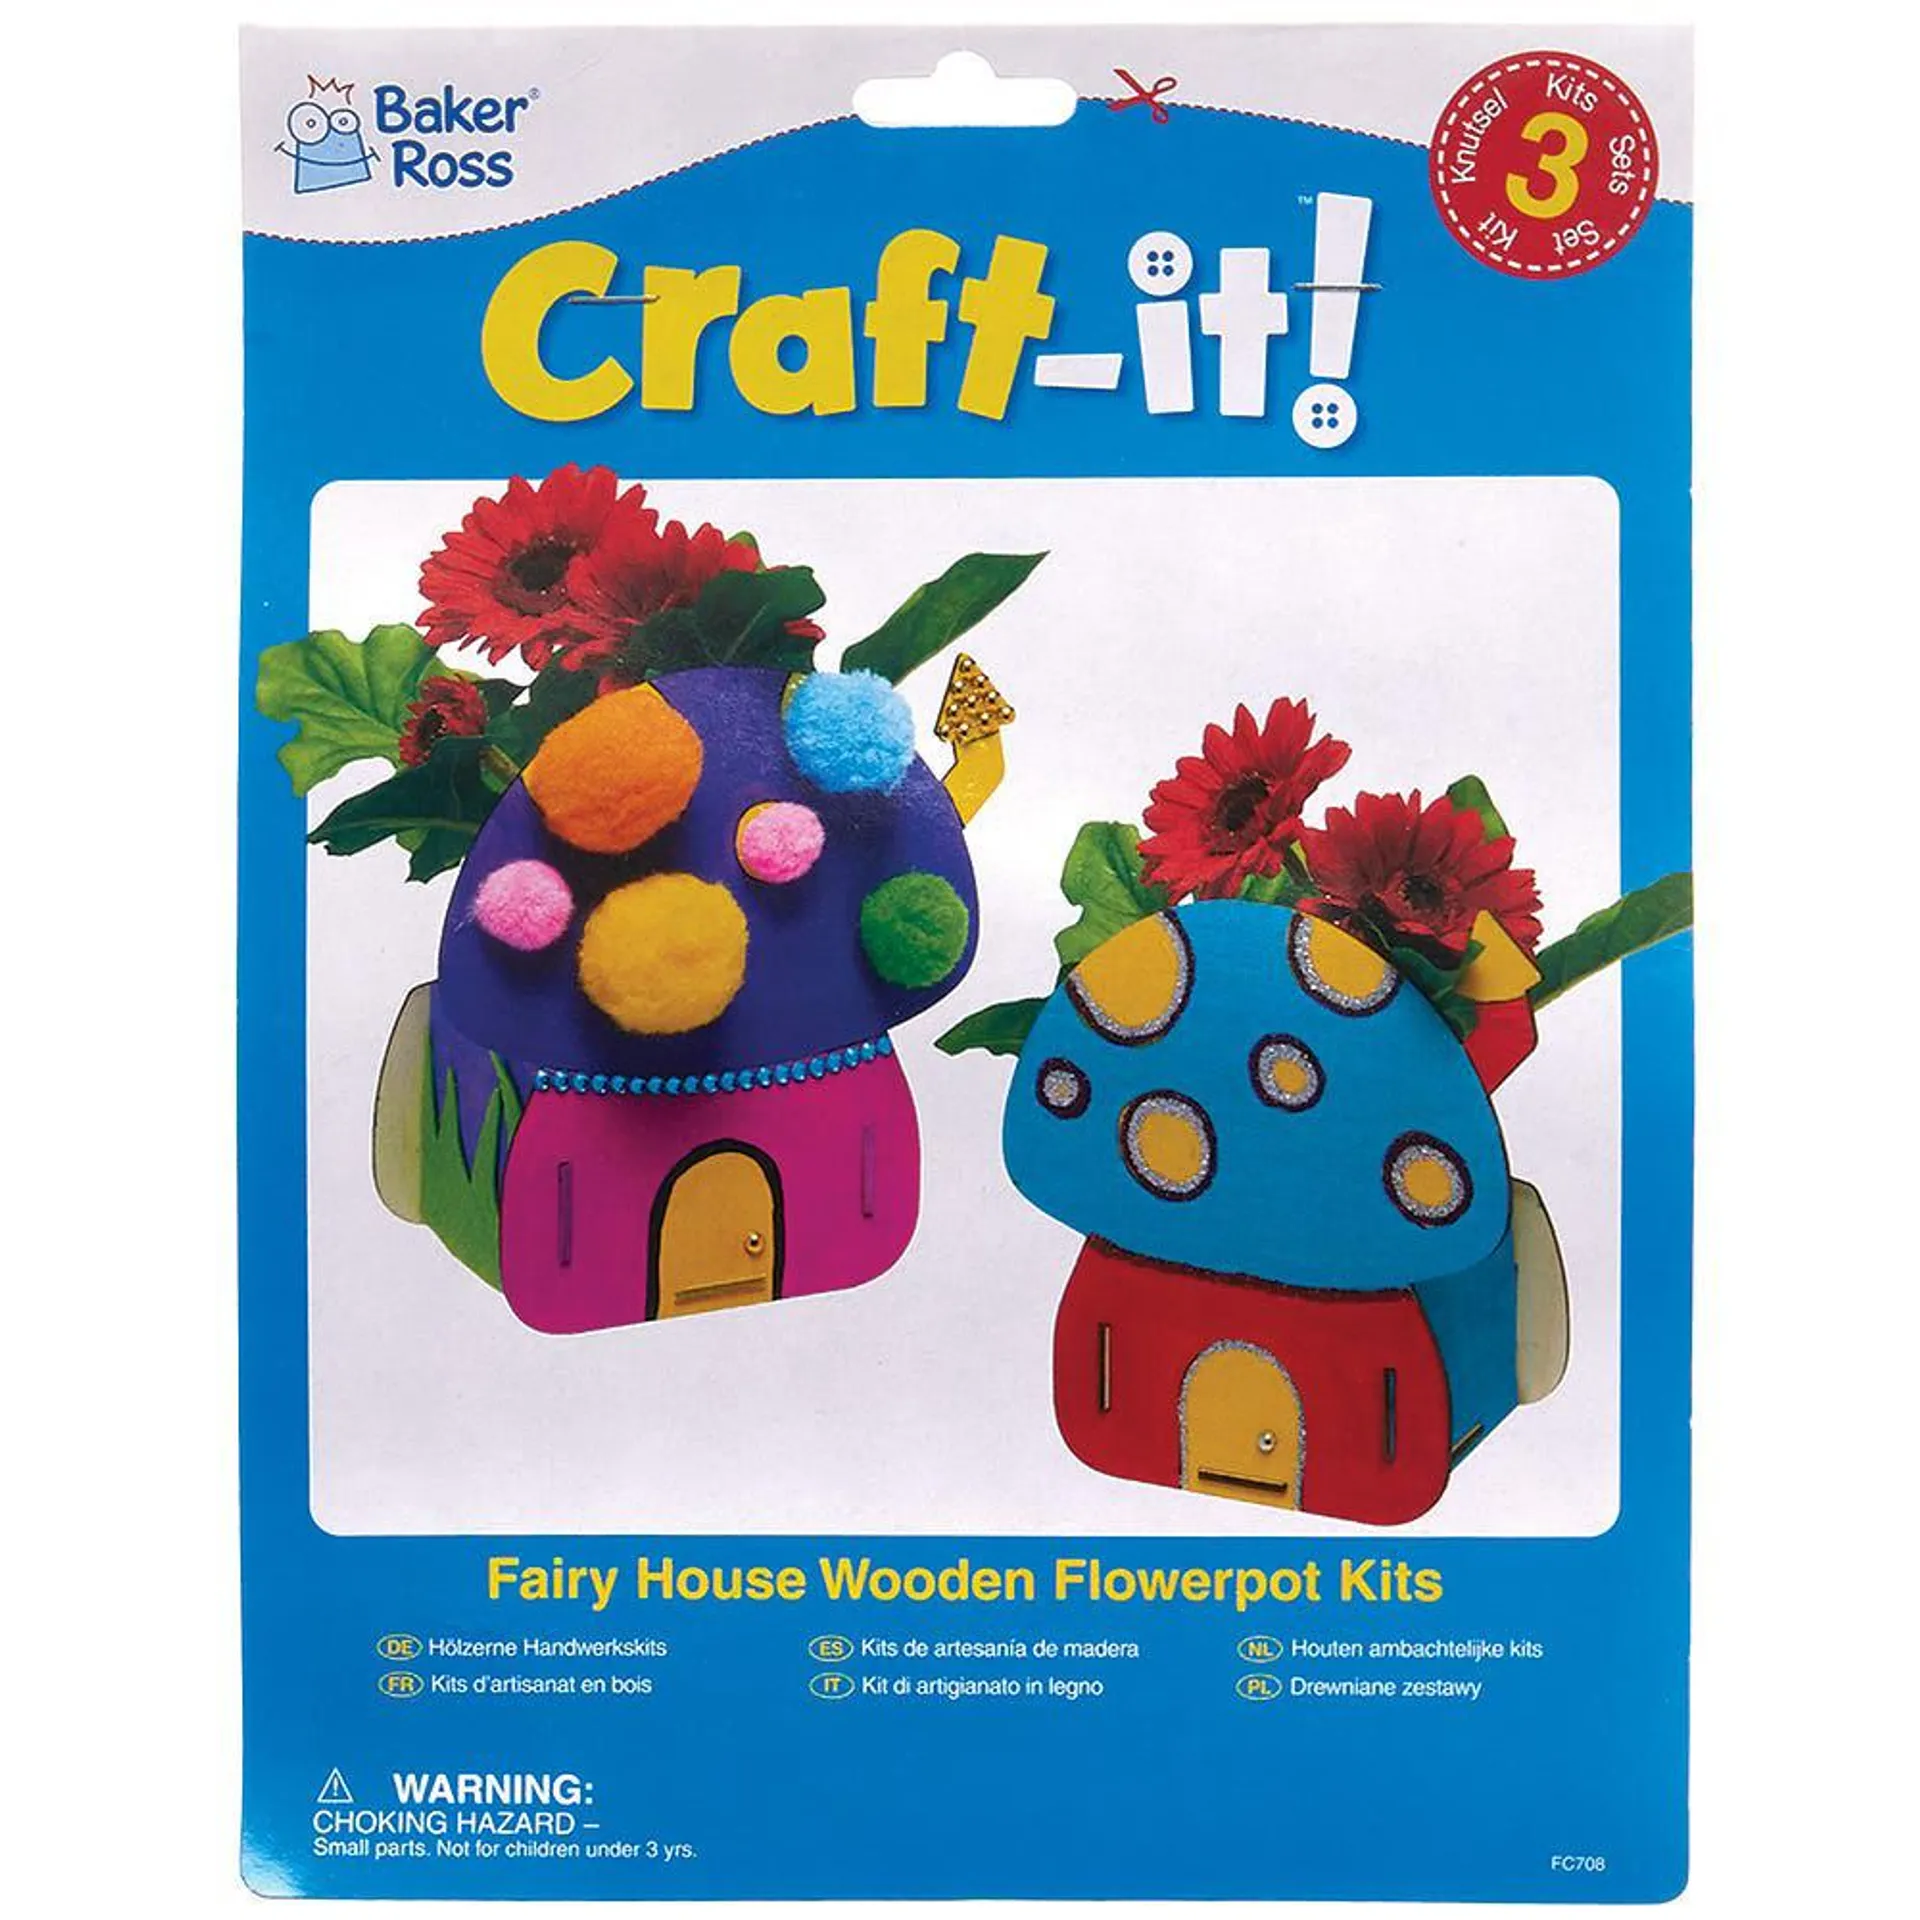 Fairy House Wooden Flowerpot Kits